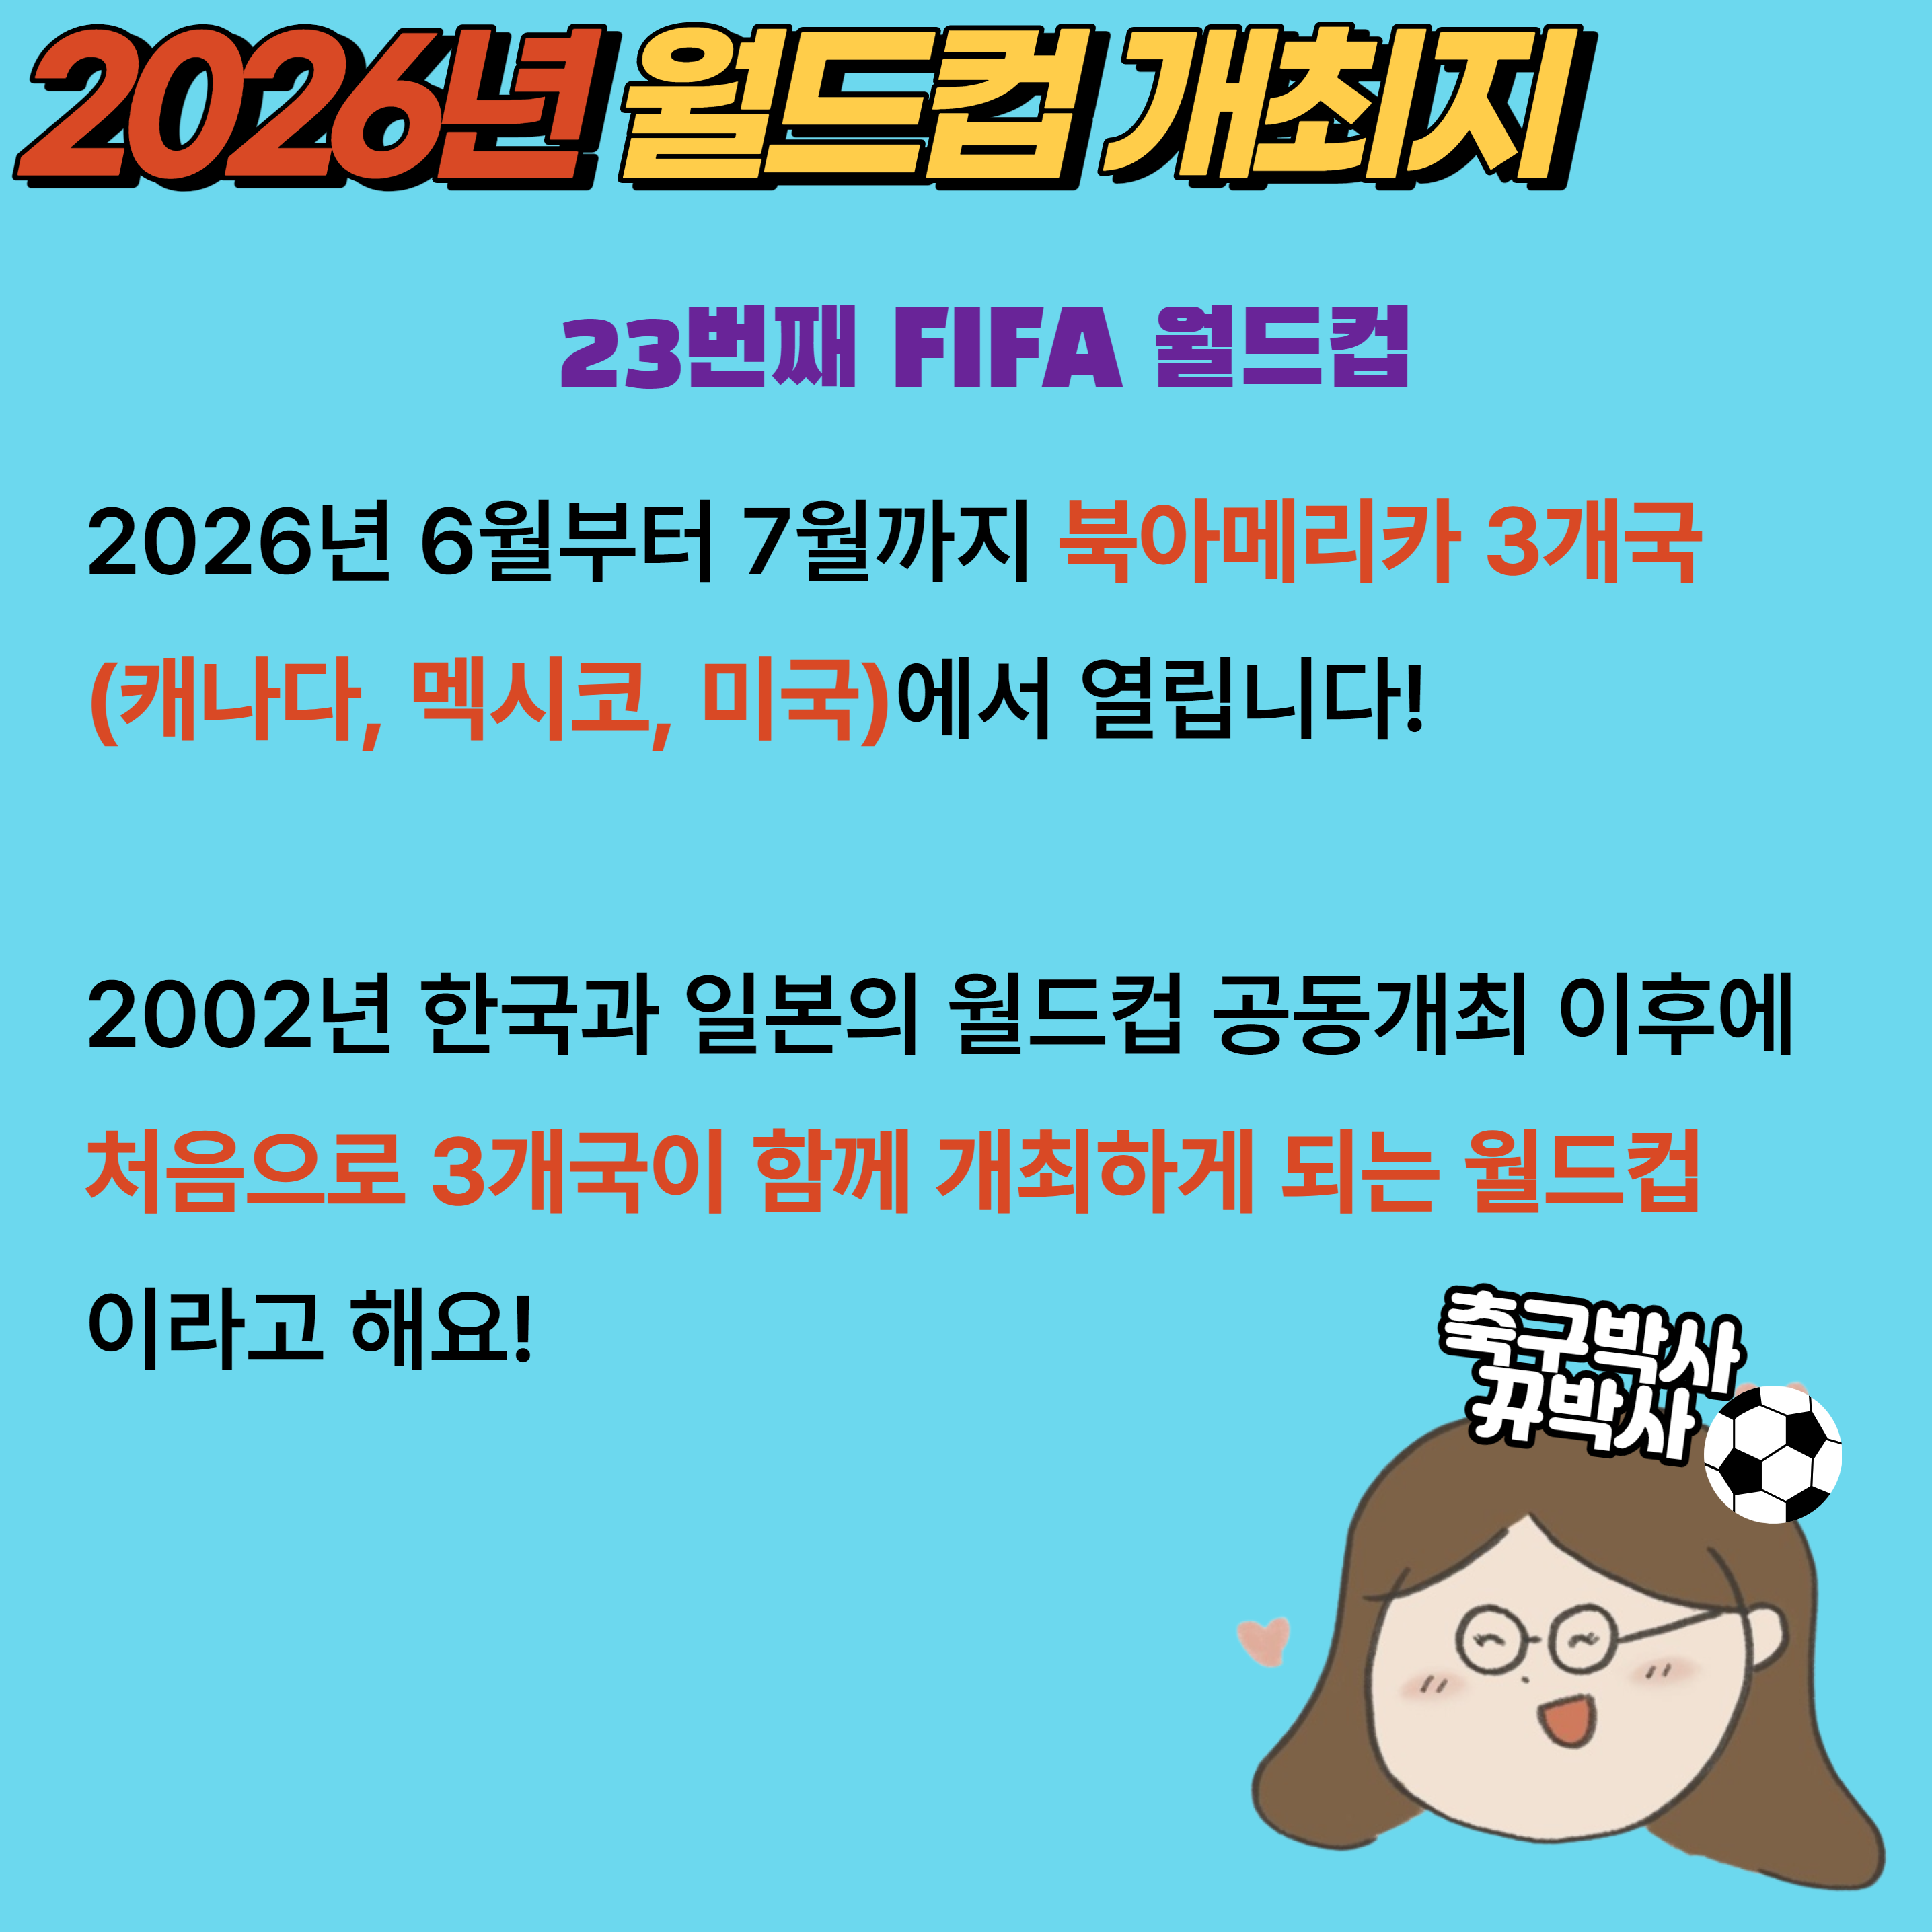 2026년 월드컵 개최지 정보